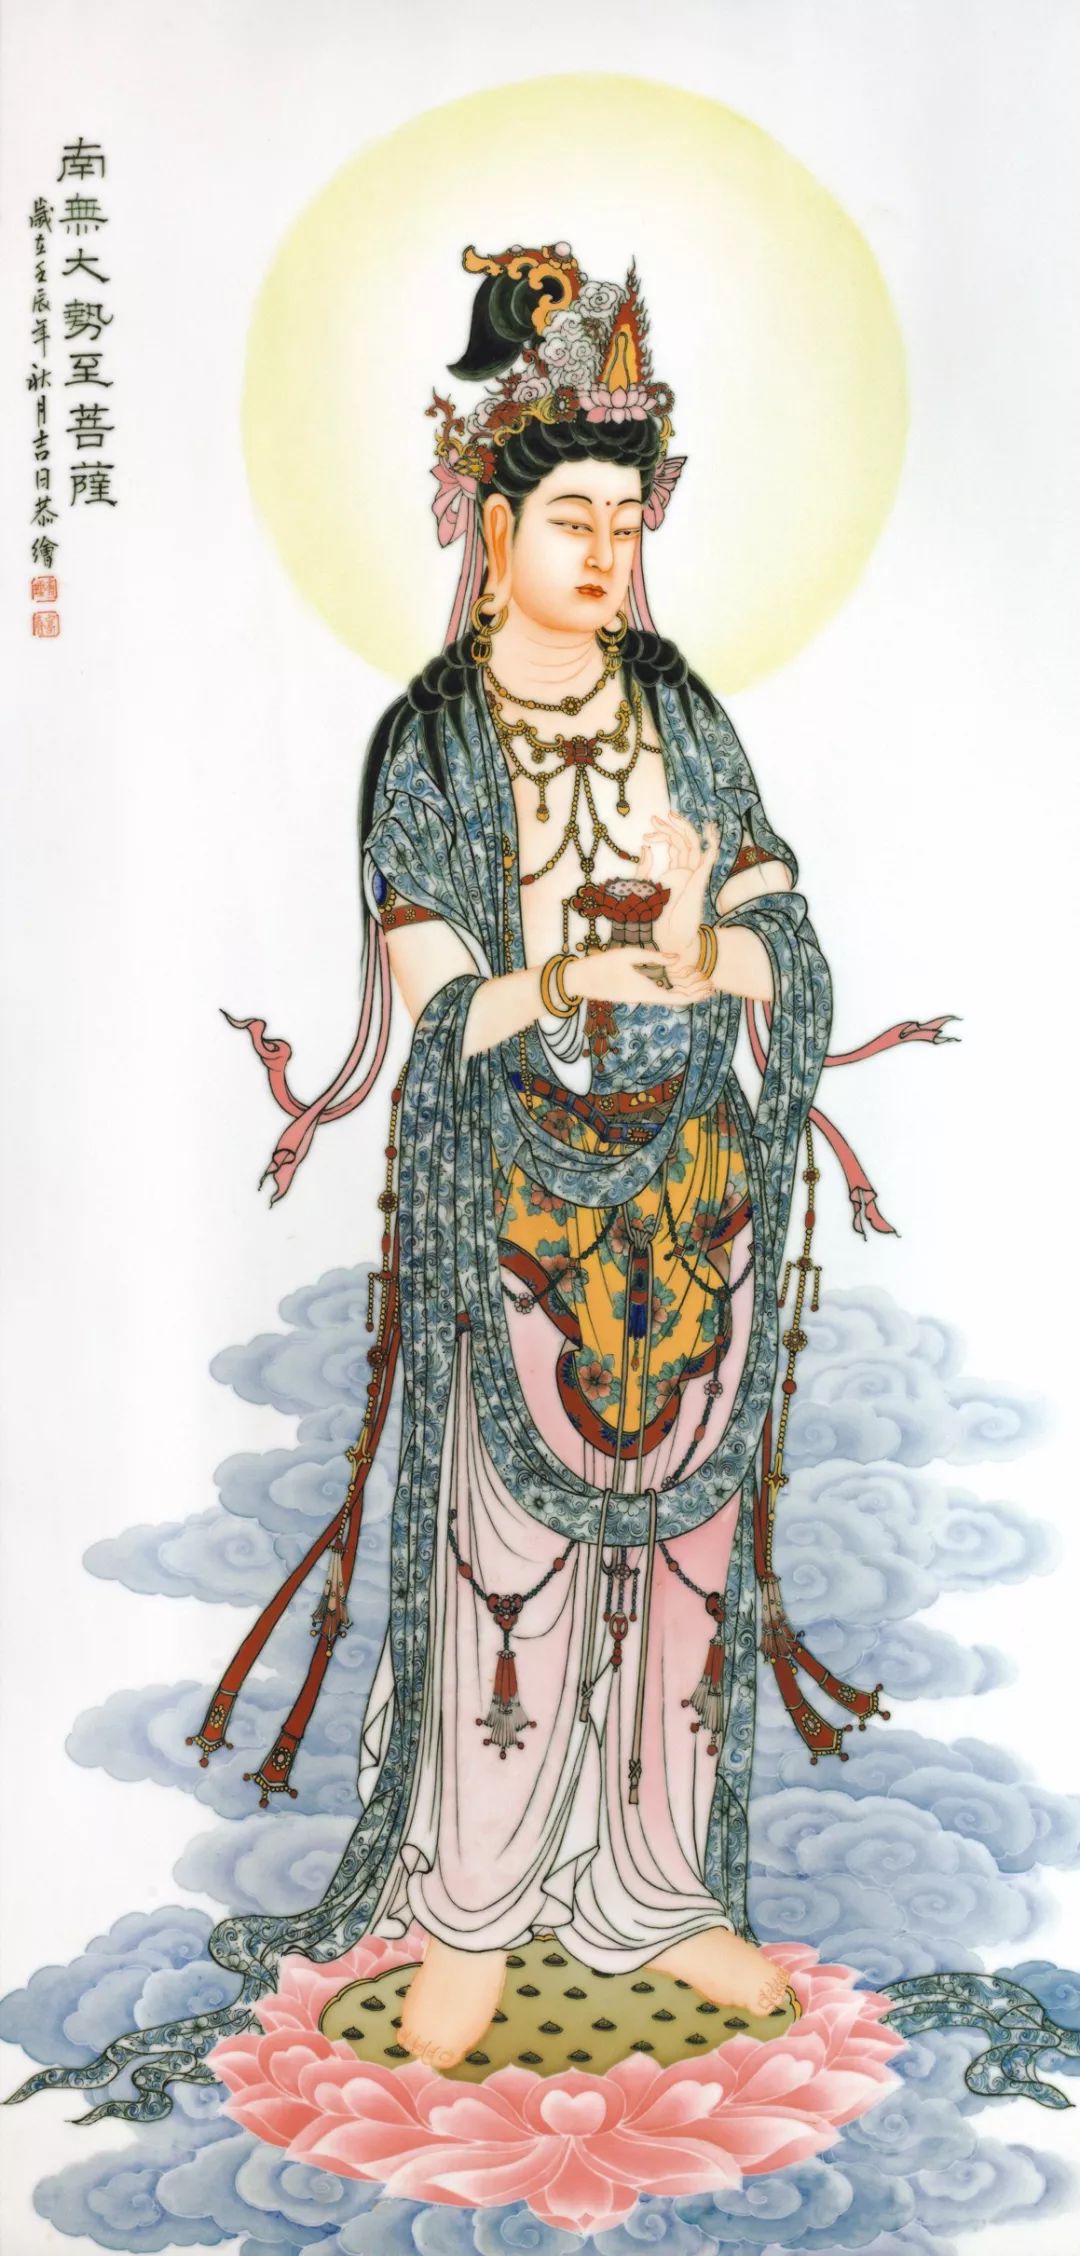 宋朝之后出现了按中国宋代仕女形象而塑造的"鱼篮观音","白衣观音"等